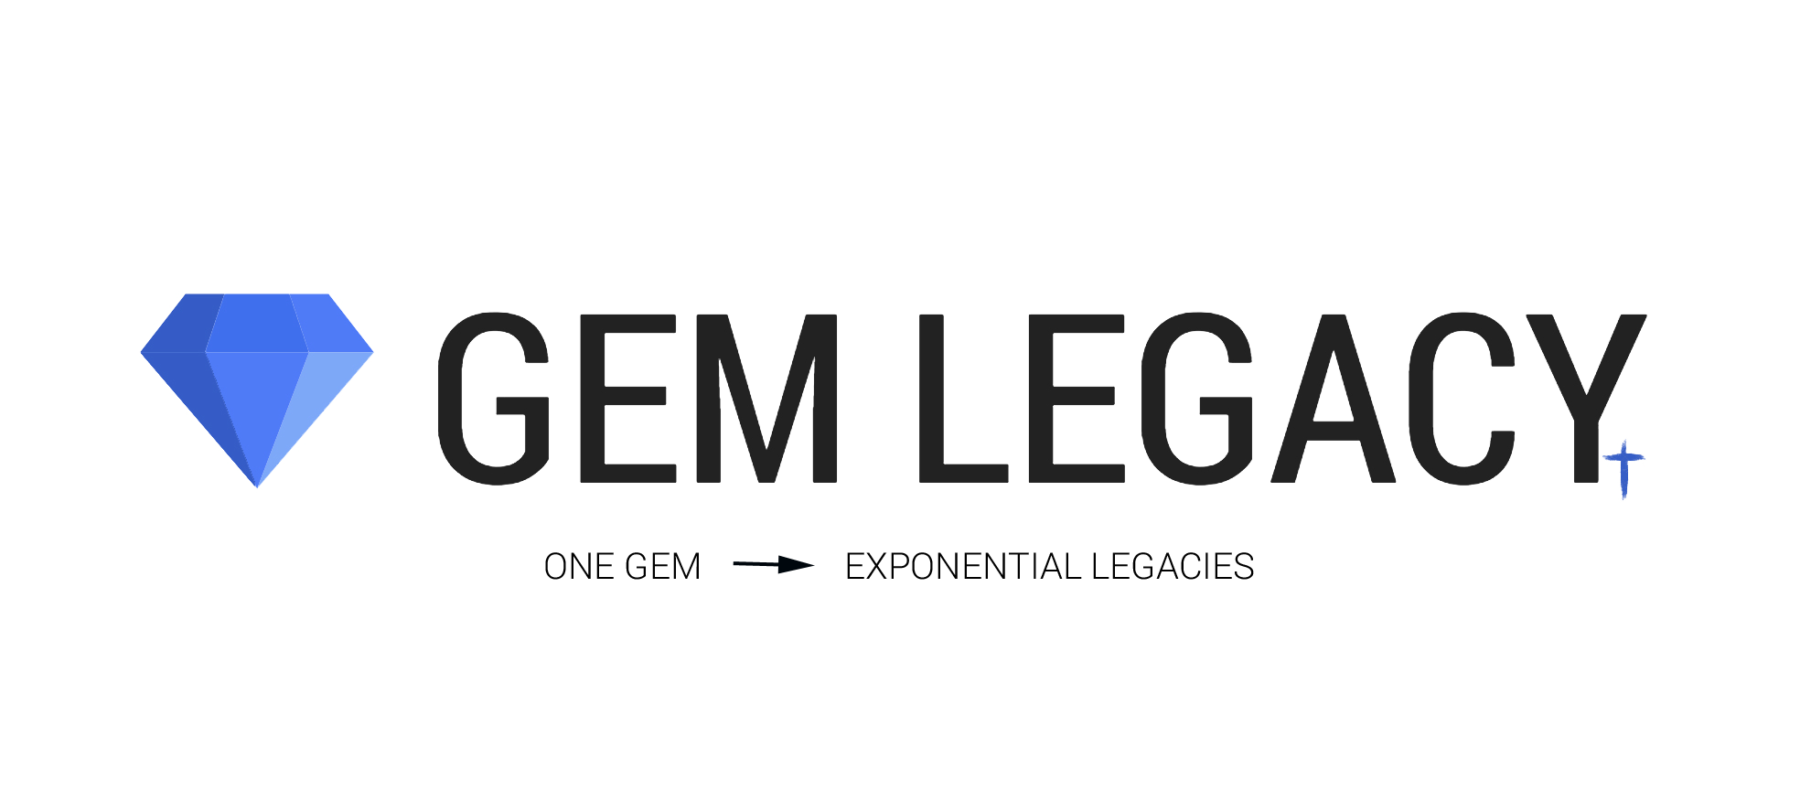 Introducing: Gem Legacy - Roger Dery Gem Design